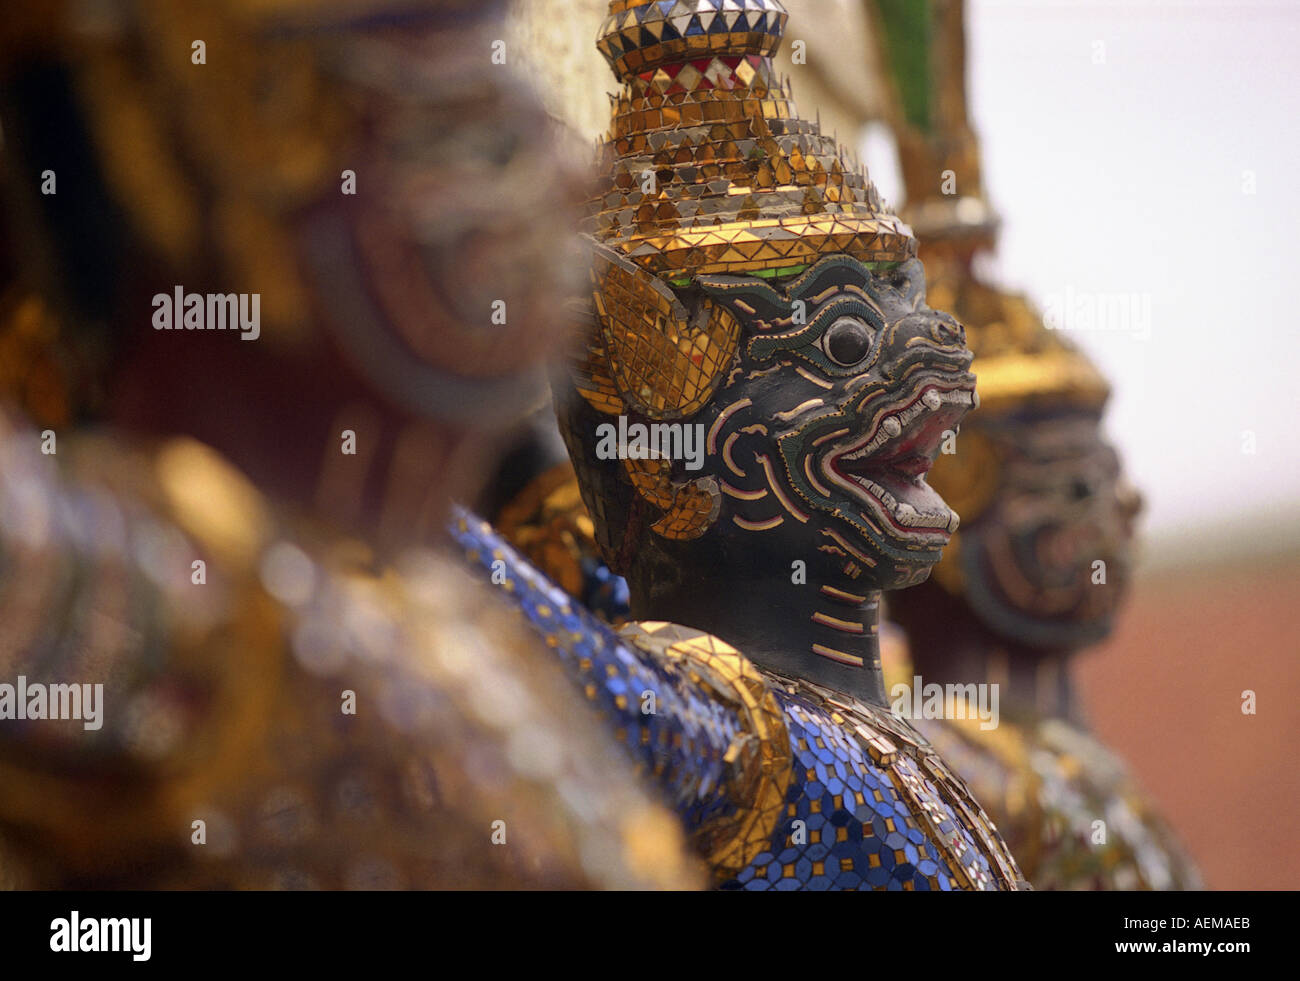 statues at the grand palace in bangkok thailand Stock Photo